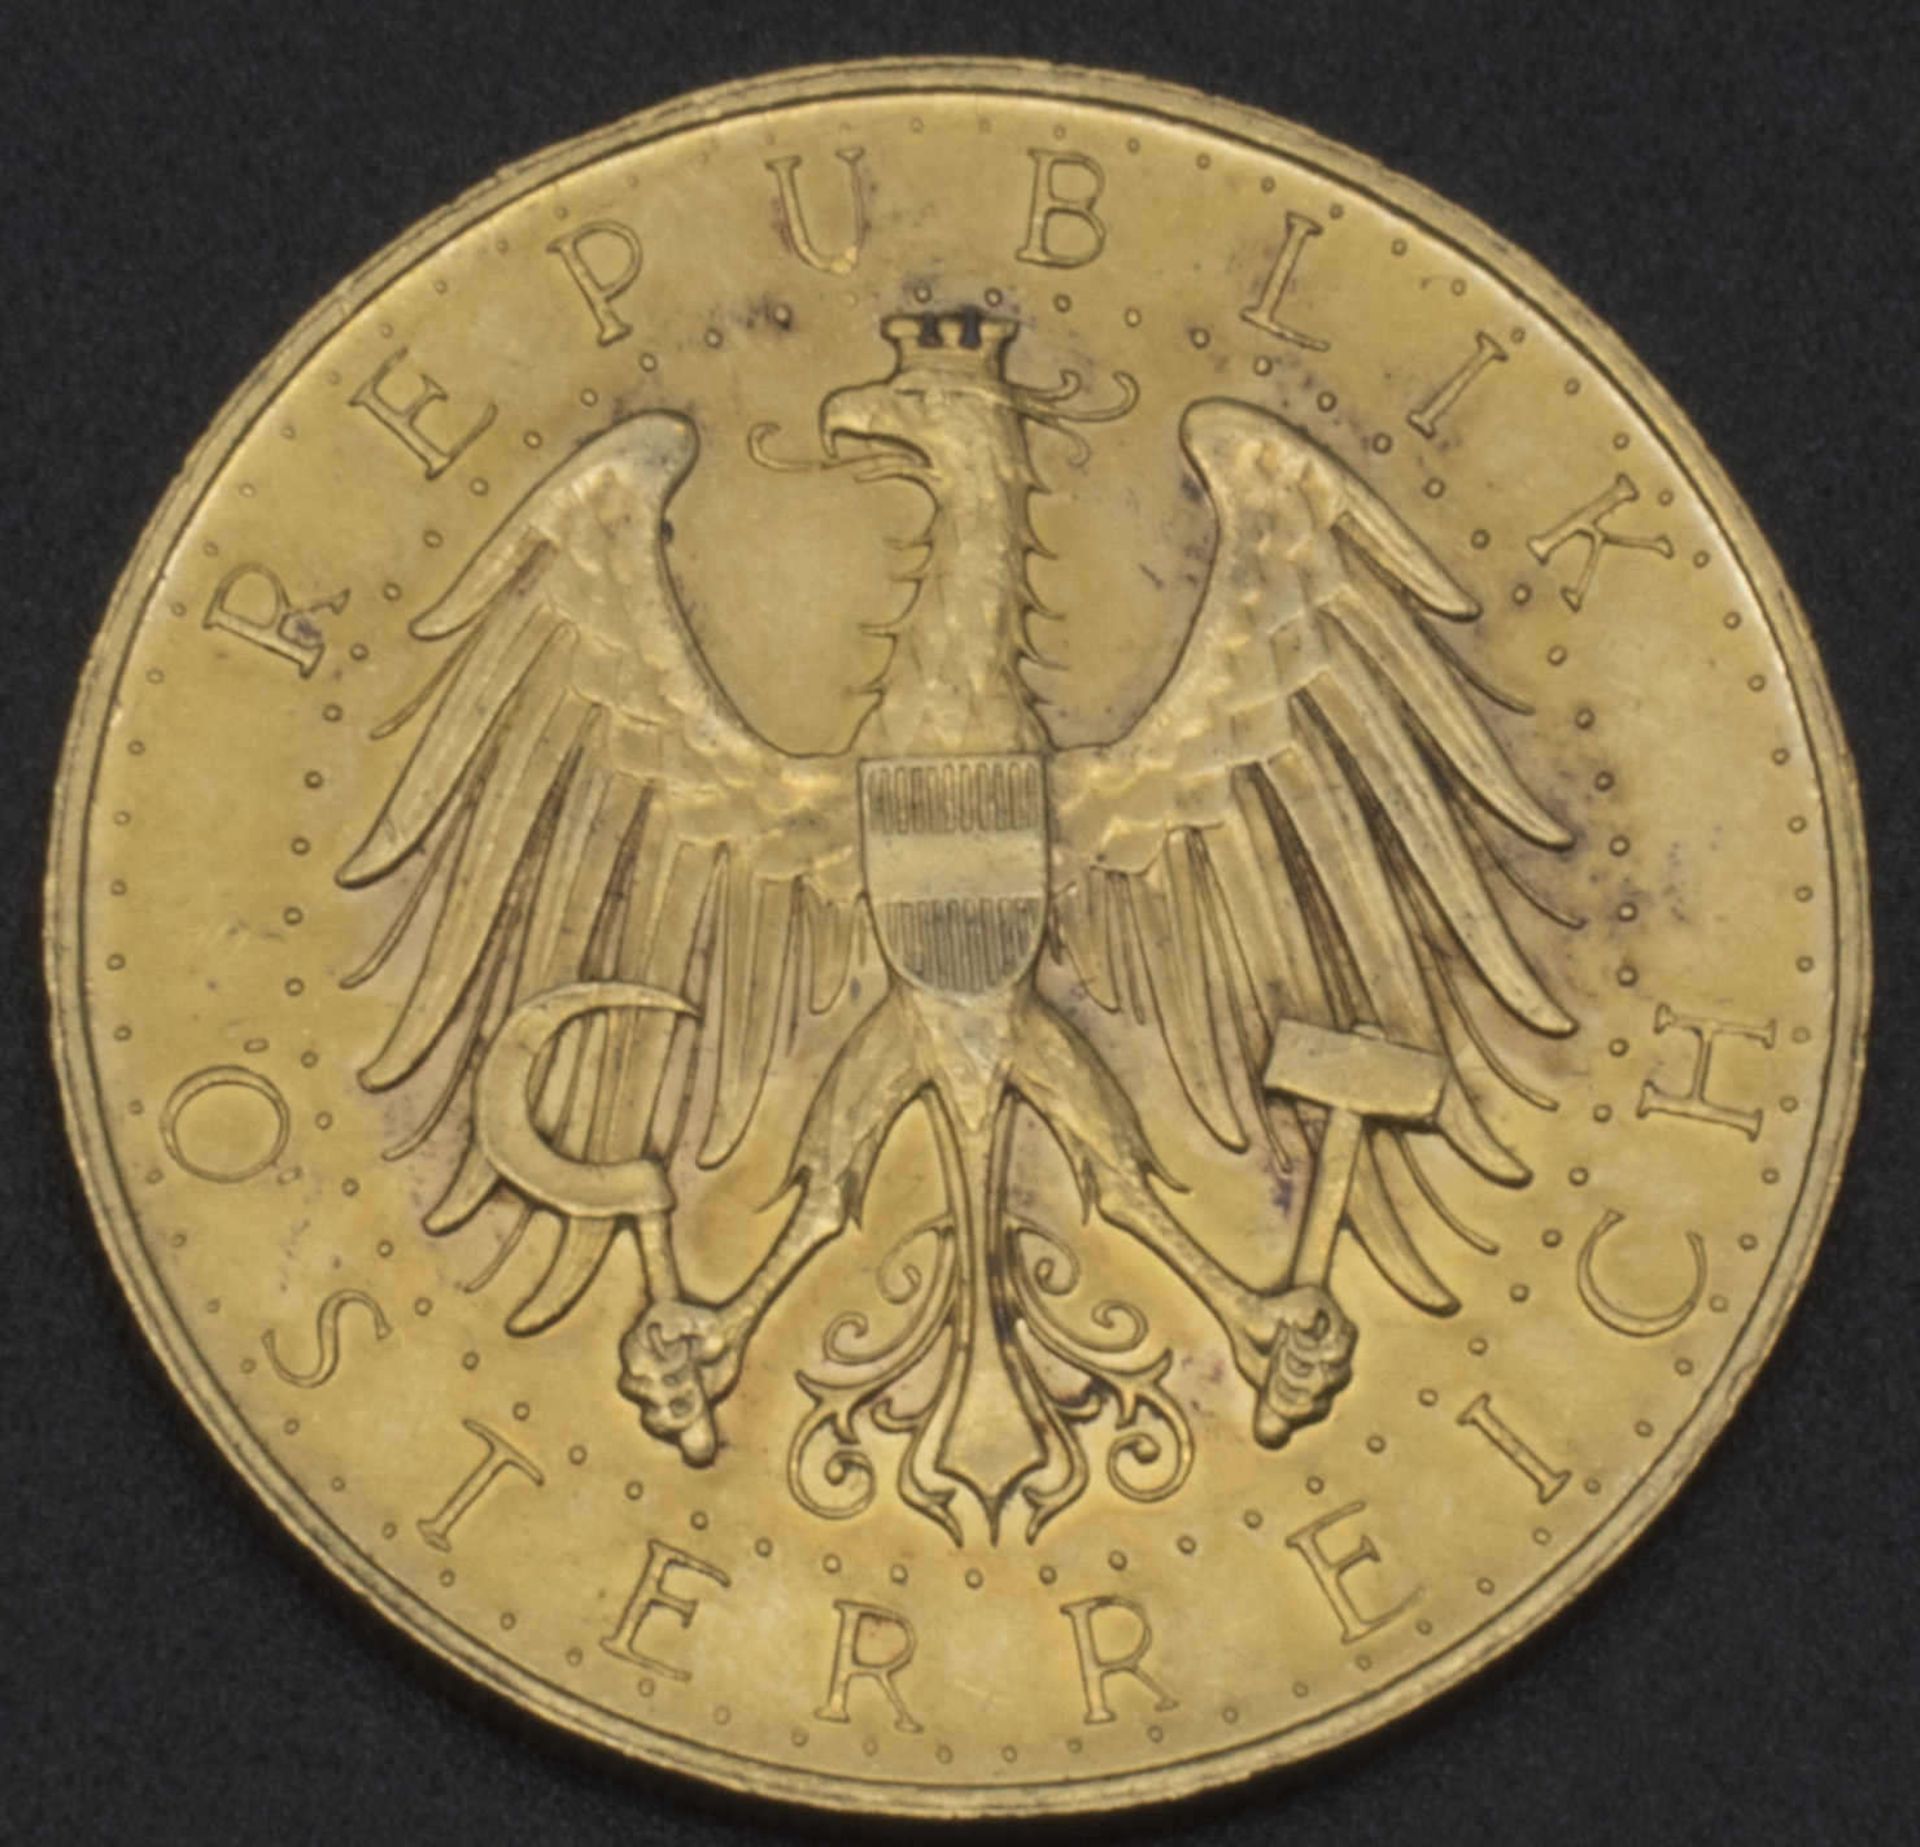 Austria Republic, 100 shillings gold coin 1931. condition vz - Bild 2 aus 2